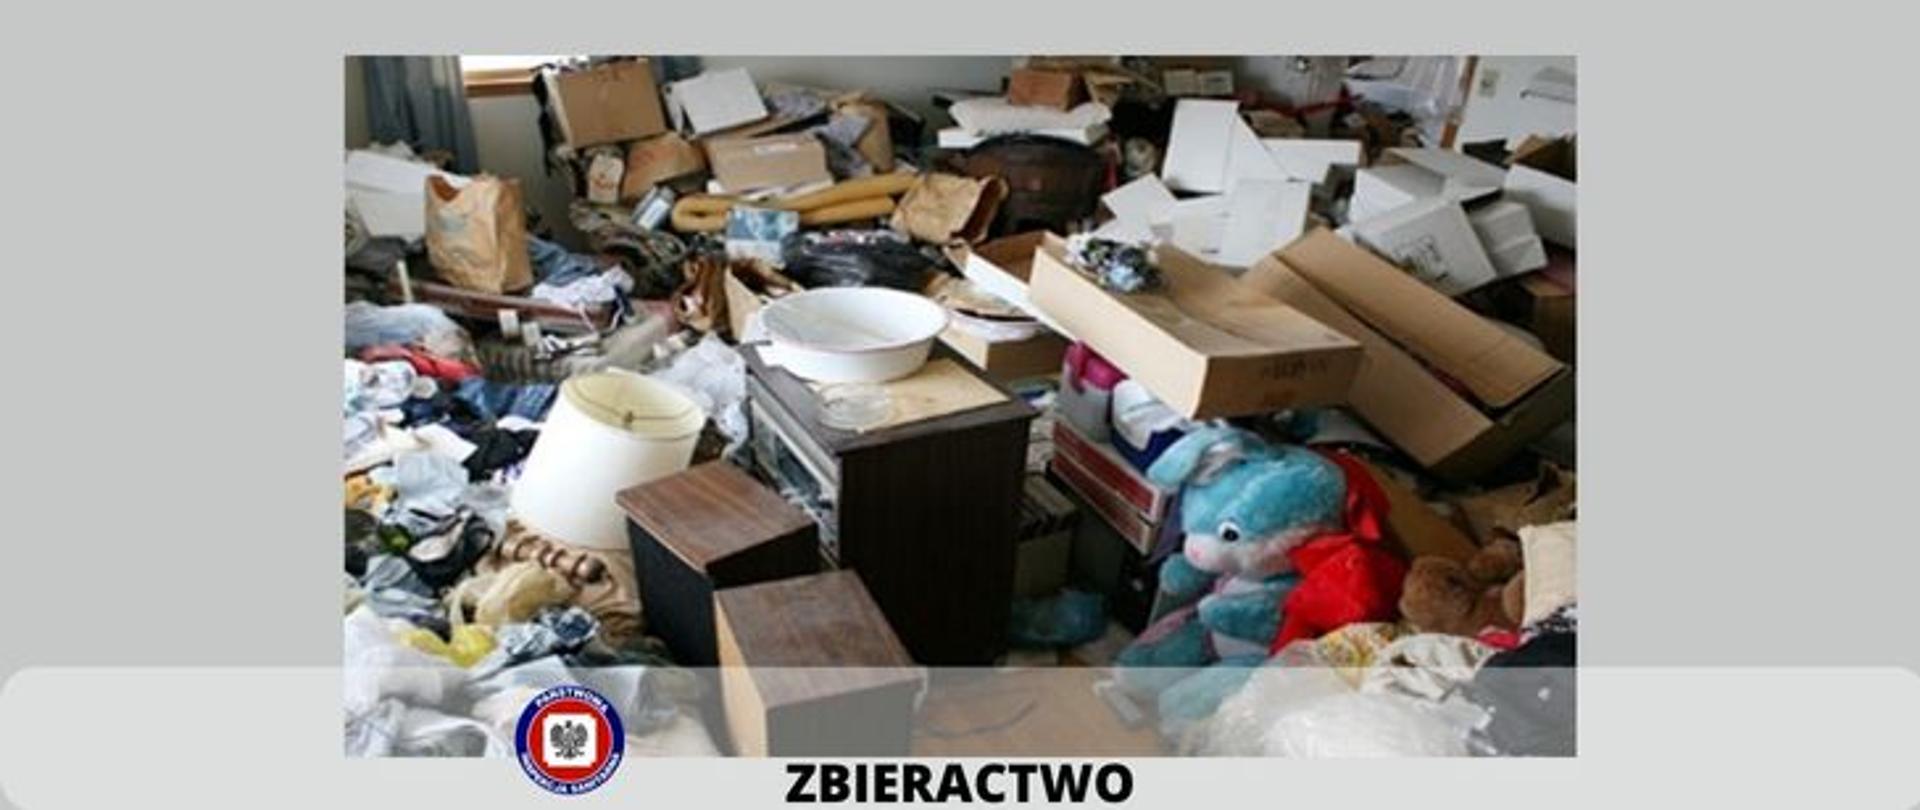 Zdjęcie przedstawia pomieszczenie Za sypane różnymi przedmiotami jak stare meble, kartony stare zabawki lampki nocne i inne śmieci